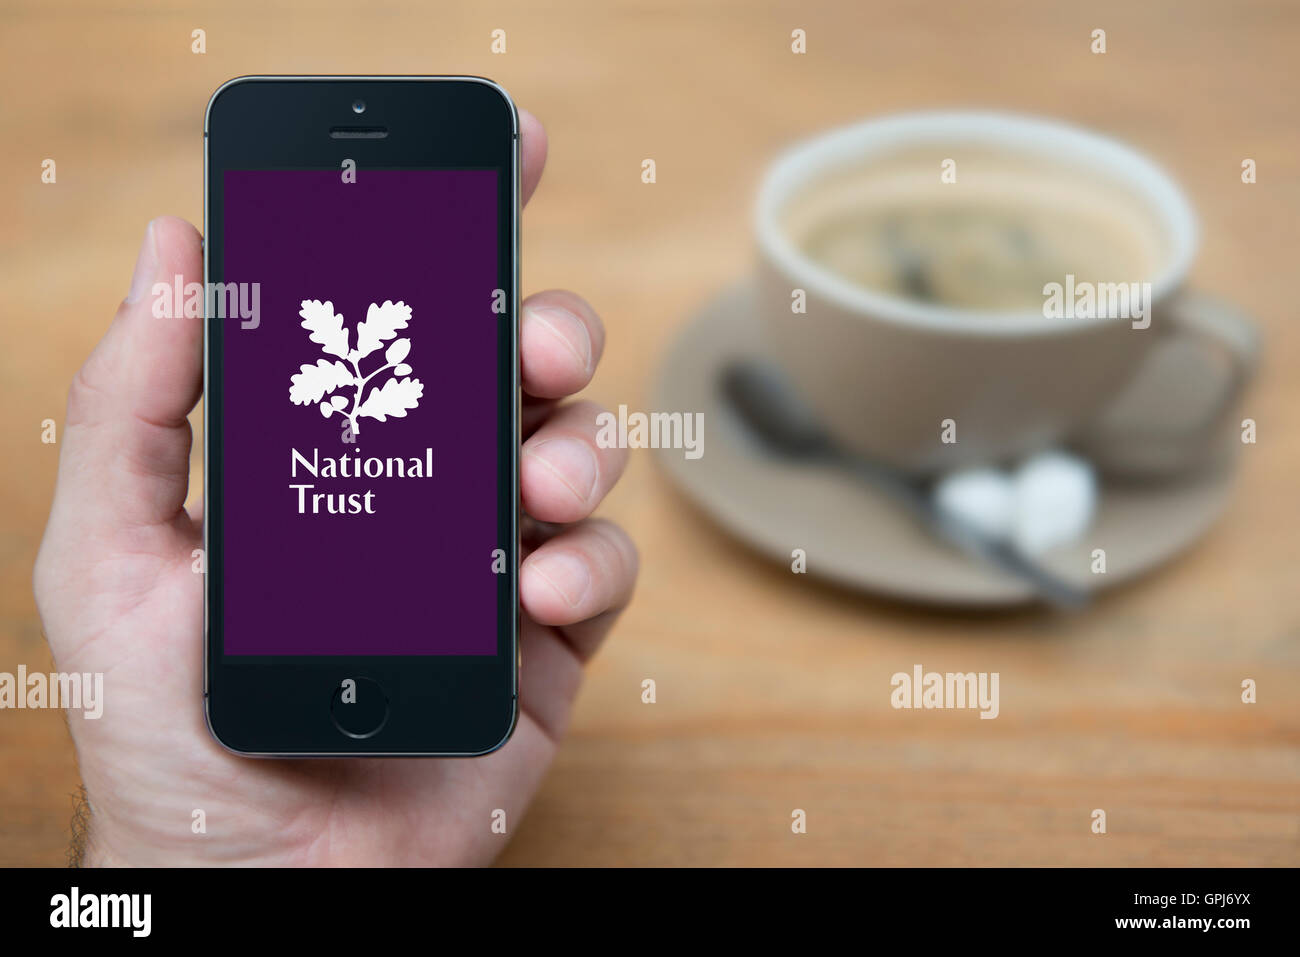 Un hombre mira el iPhone que muestra el logotipo de Confianza Nacional, mientras que se sentó con una taza de café (uso Editorial solamente). Foto de stock